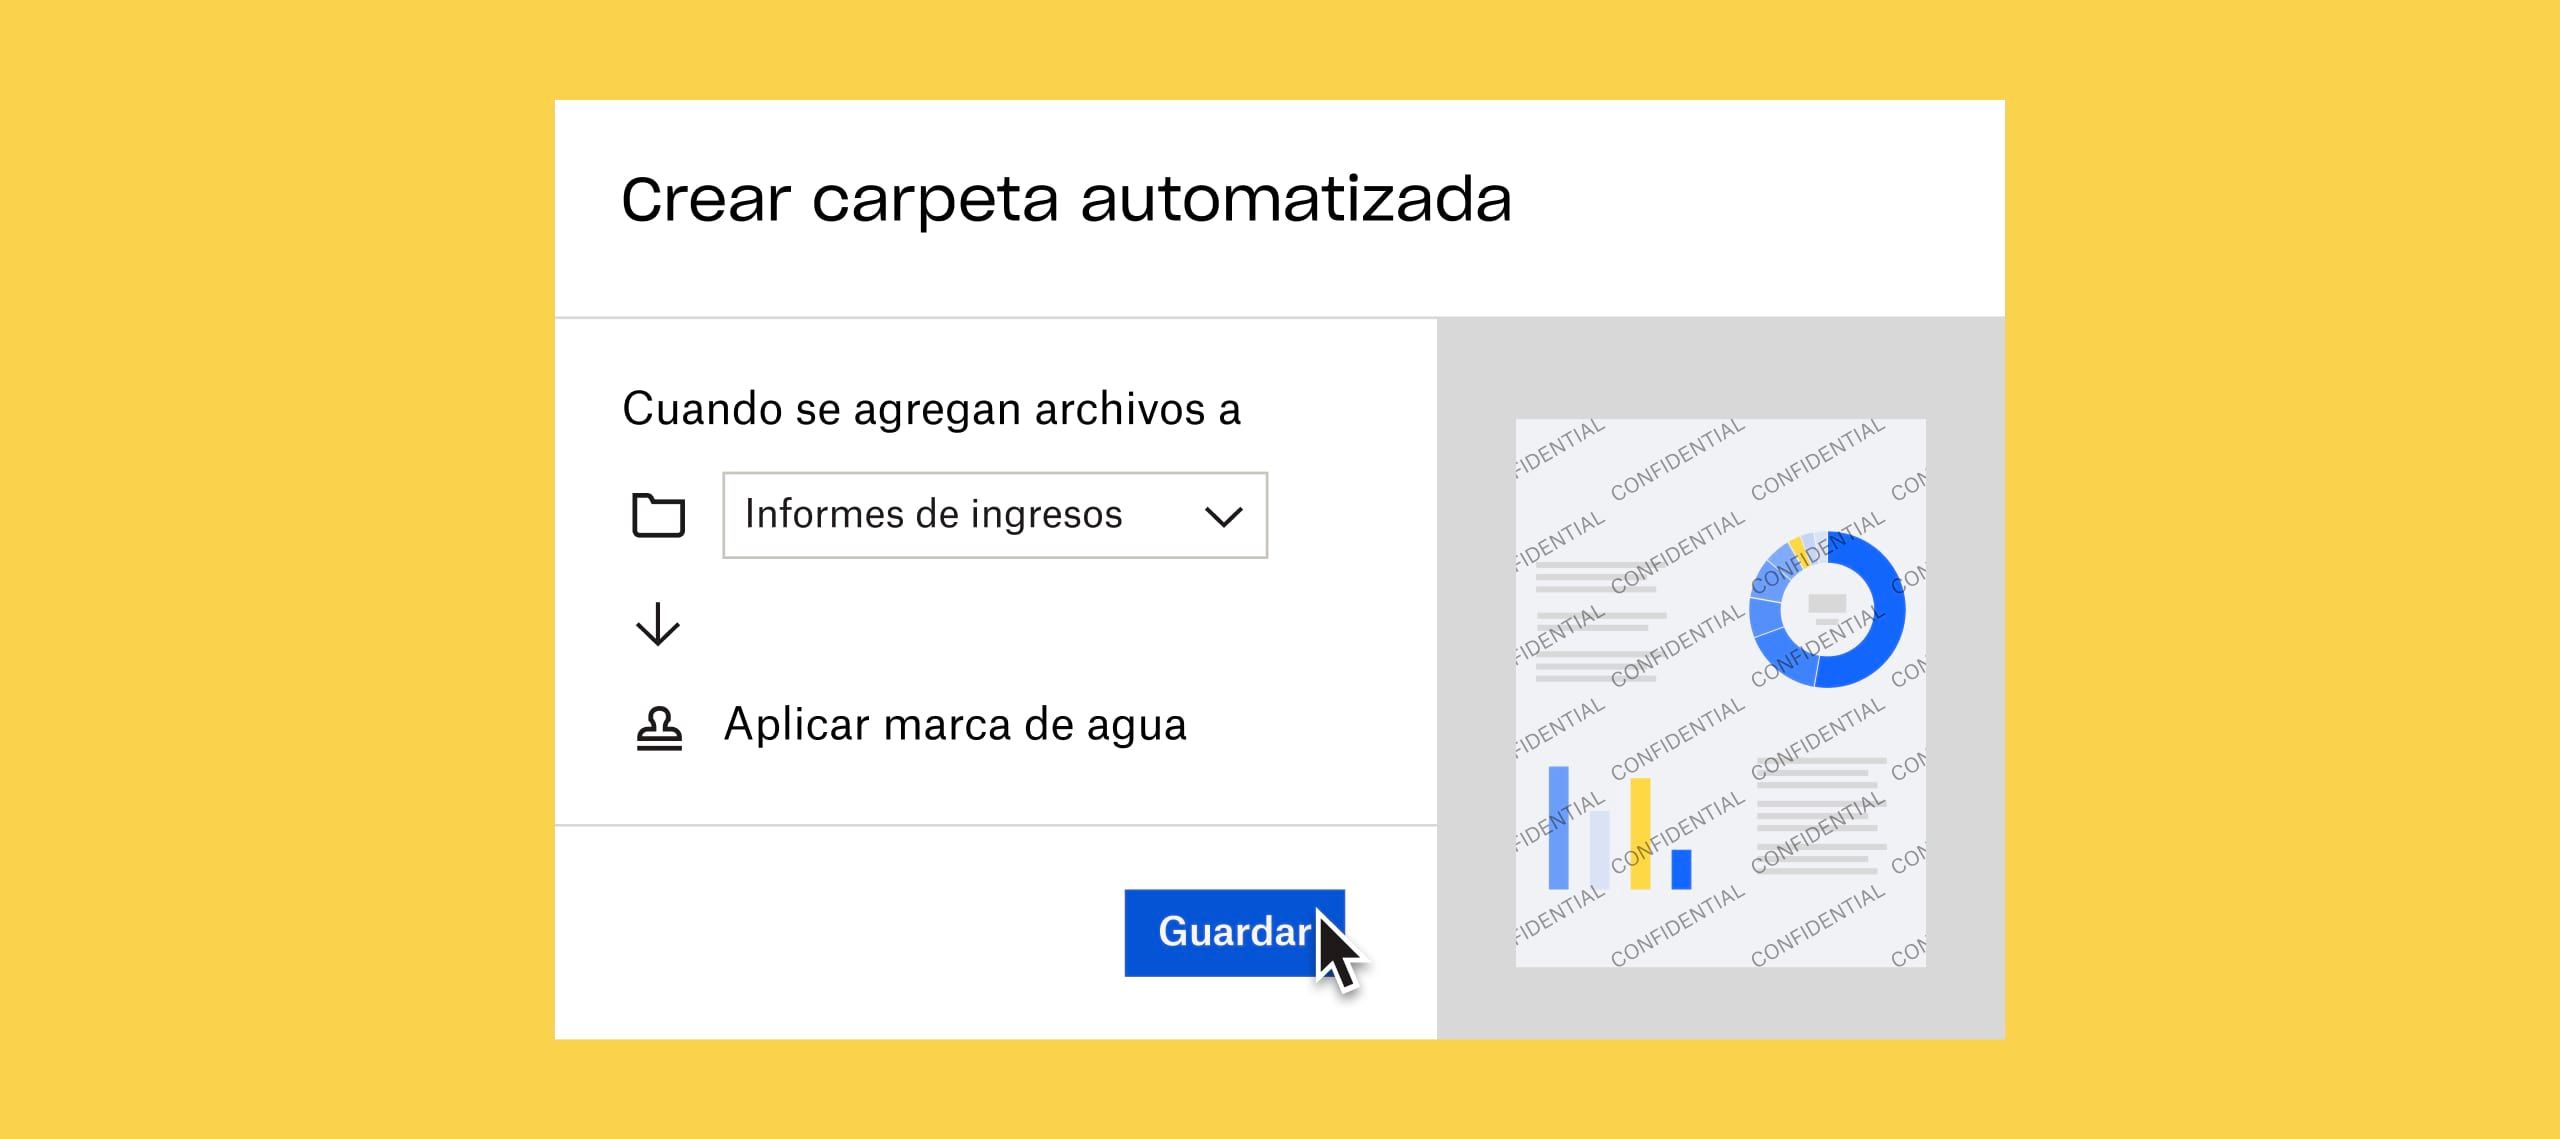 Un usuario haciendo clic en un botón azul “Guardar” para aplicar automáticamente una marca de agua a cualquier documento agregado a la carpeta “informes de ingresos”